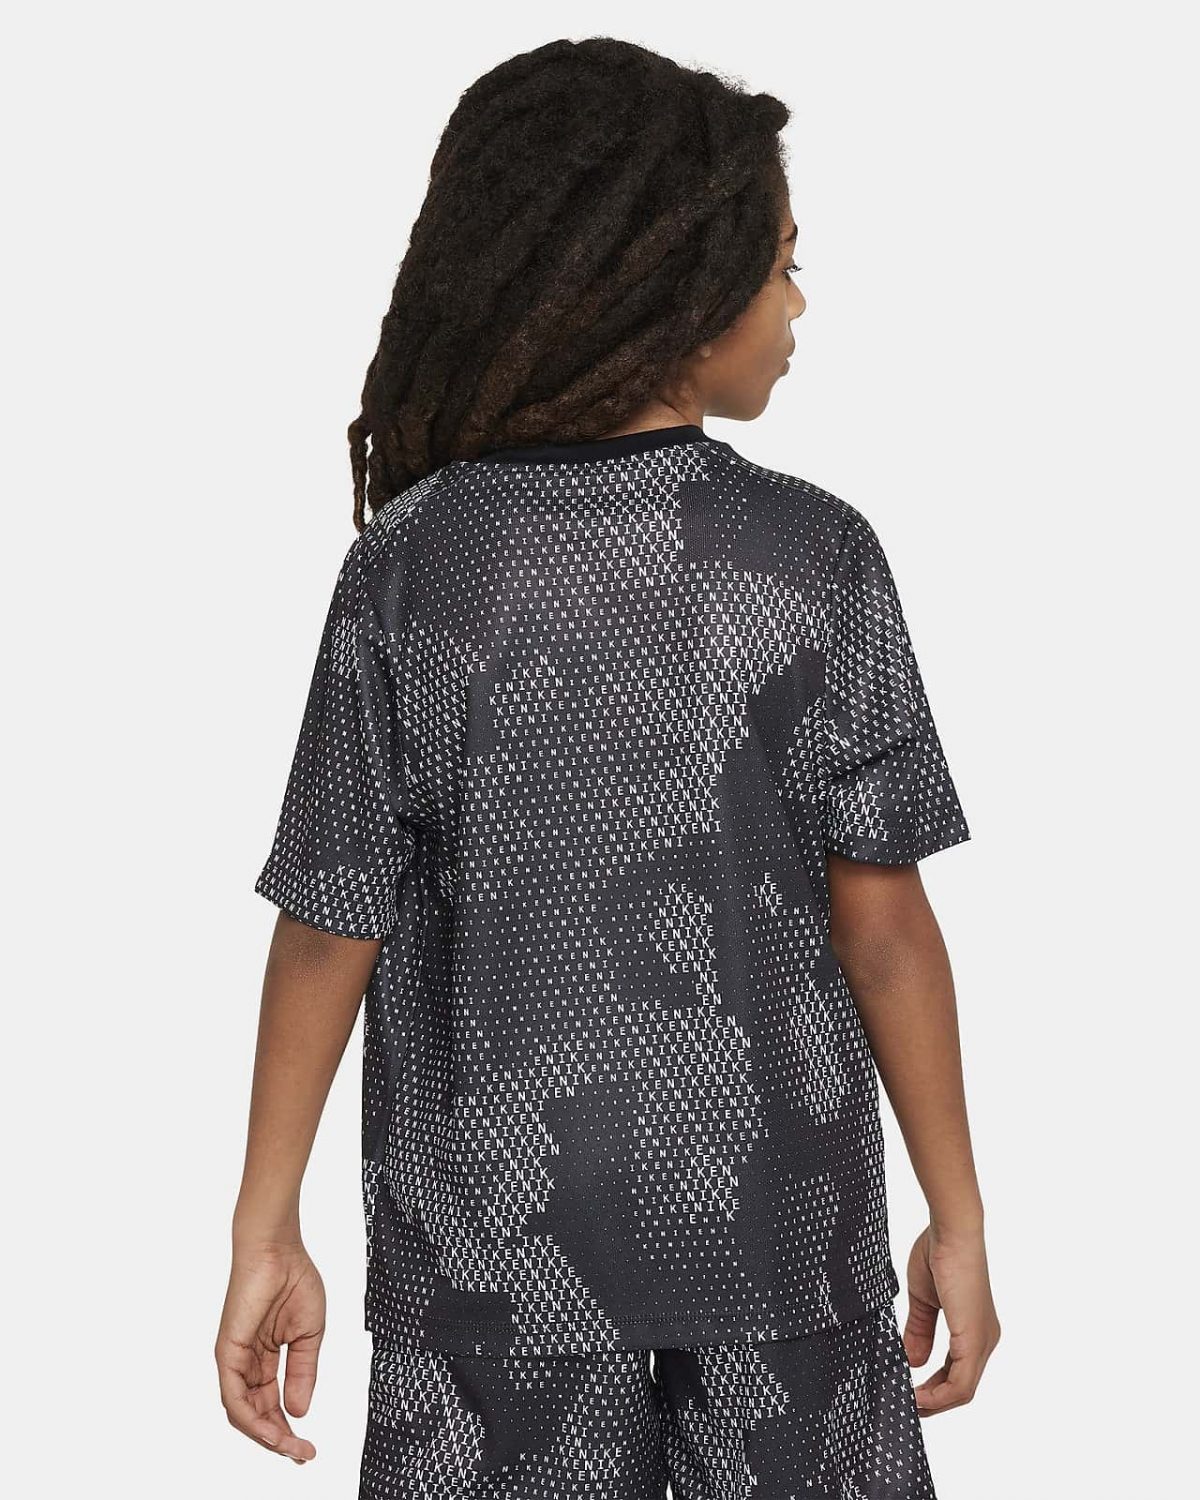 Детская рубашка Nike Multi черная фотография